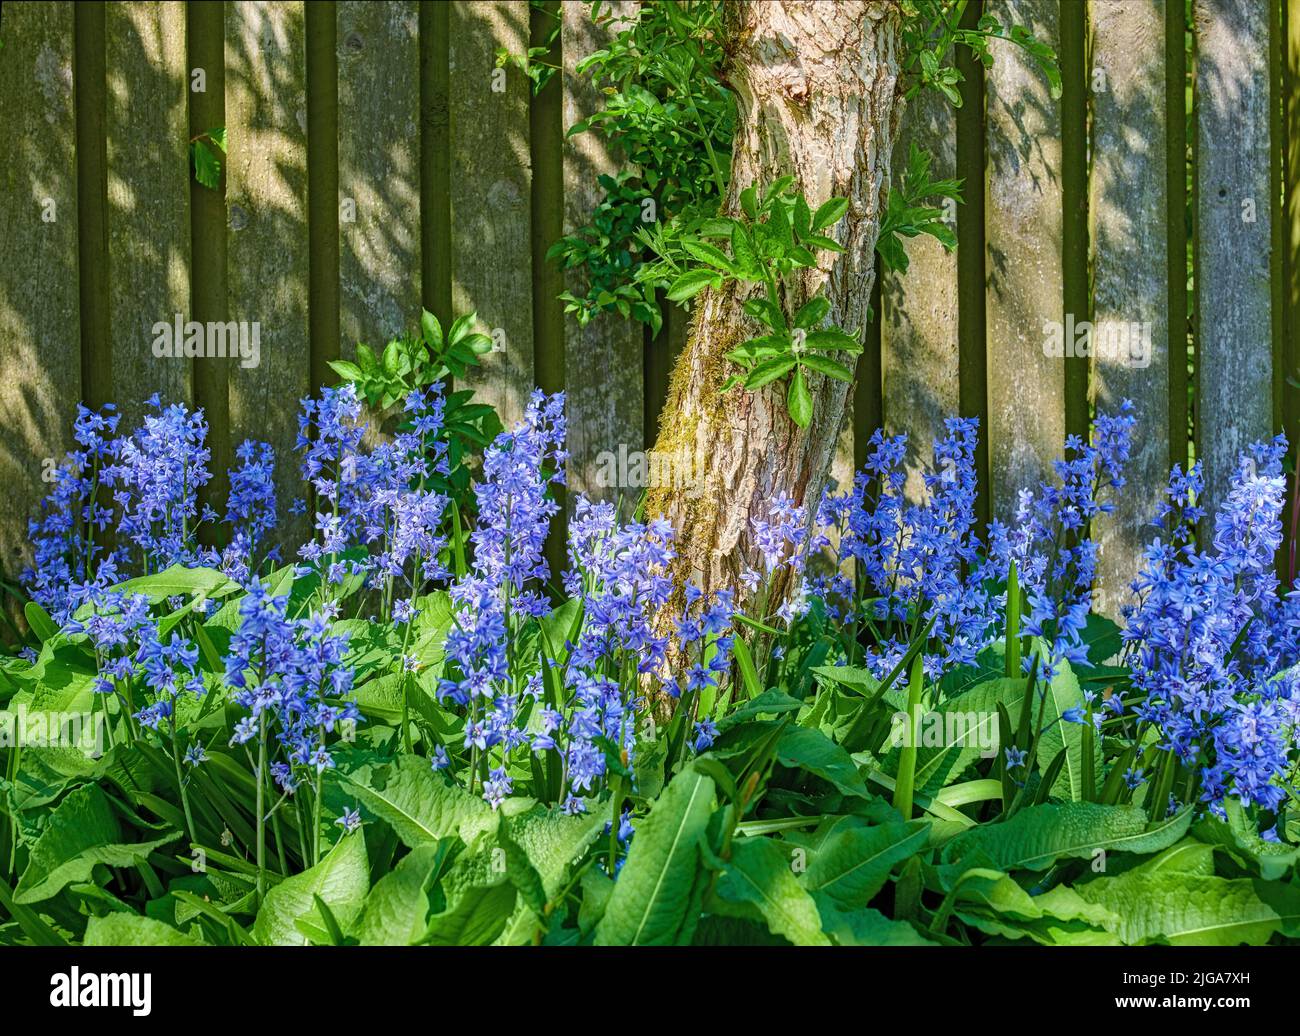 Vue sur le paysage des fleurs bluebell communes qui poussent et fleurissent sur des tiges vertes dans une cour privée ou un jardin isolé. Détail texturé de Banque D'Images